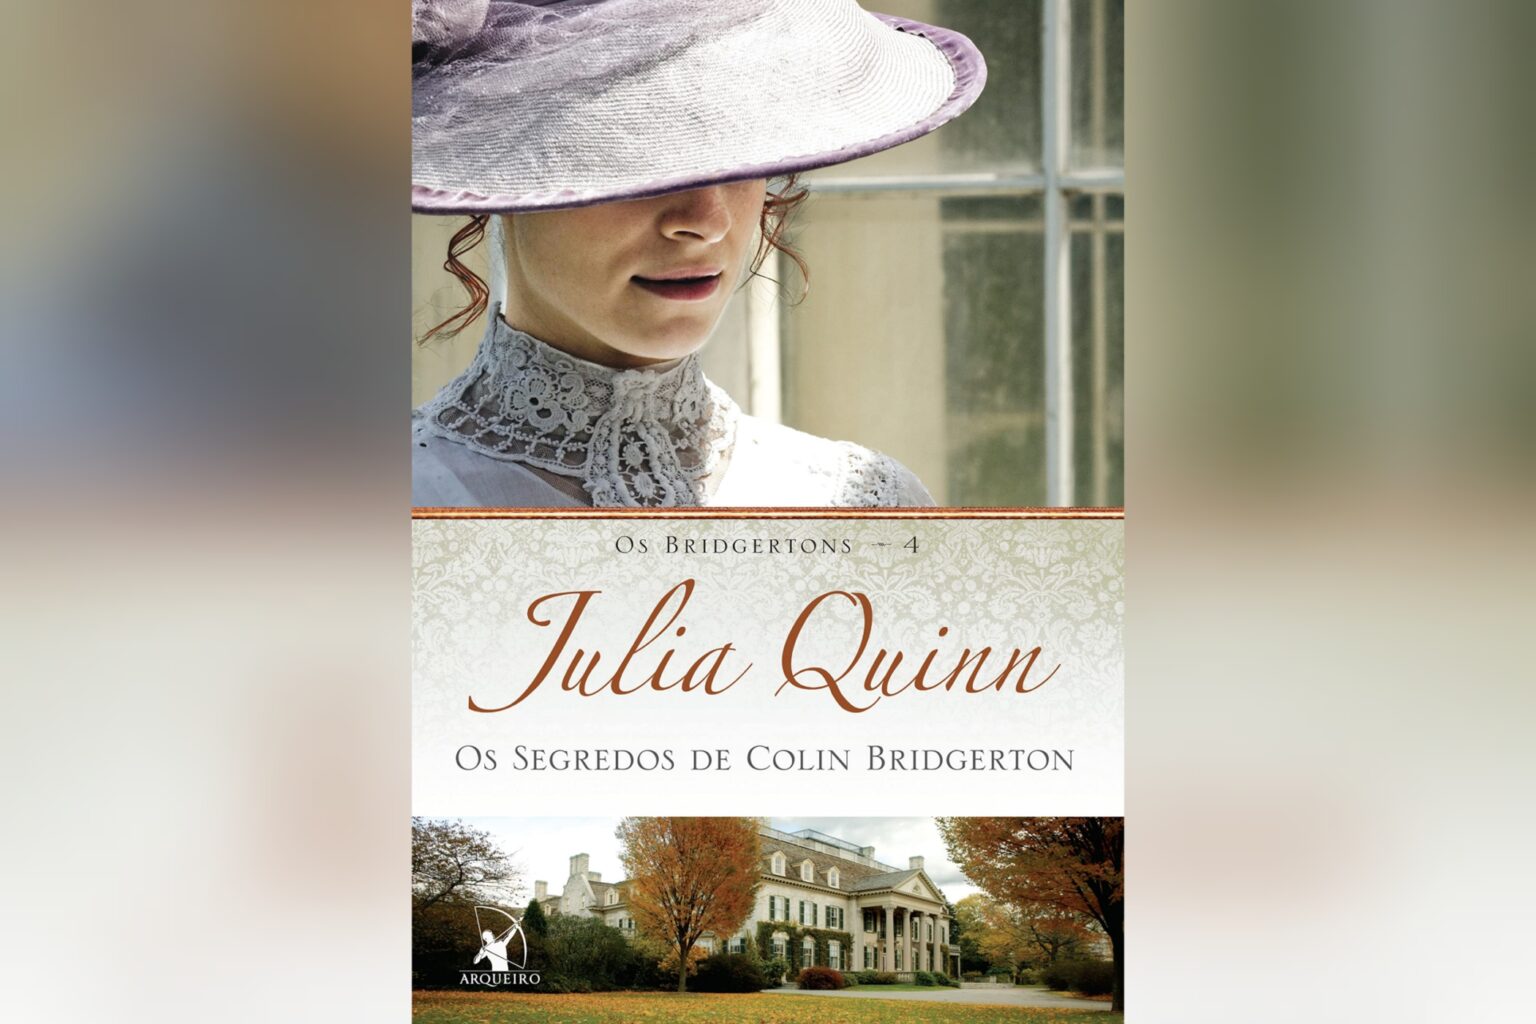 Os Segredos de Colin Bridgerton – Os Bridgerton 4 (Julia Quinn) | Resenha